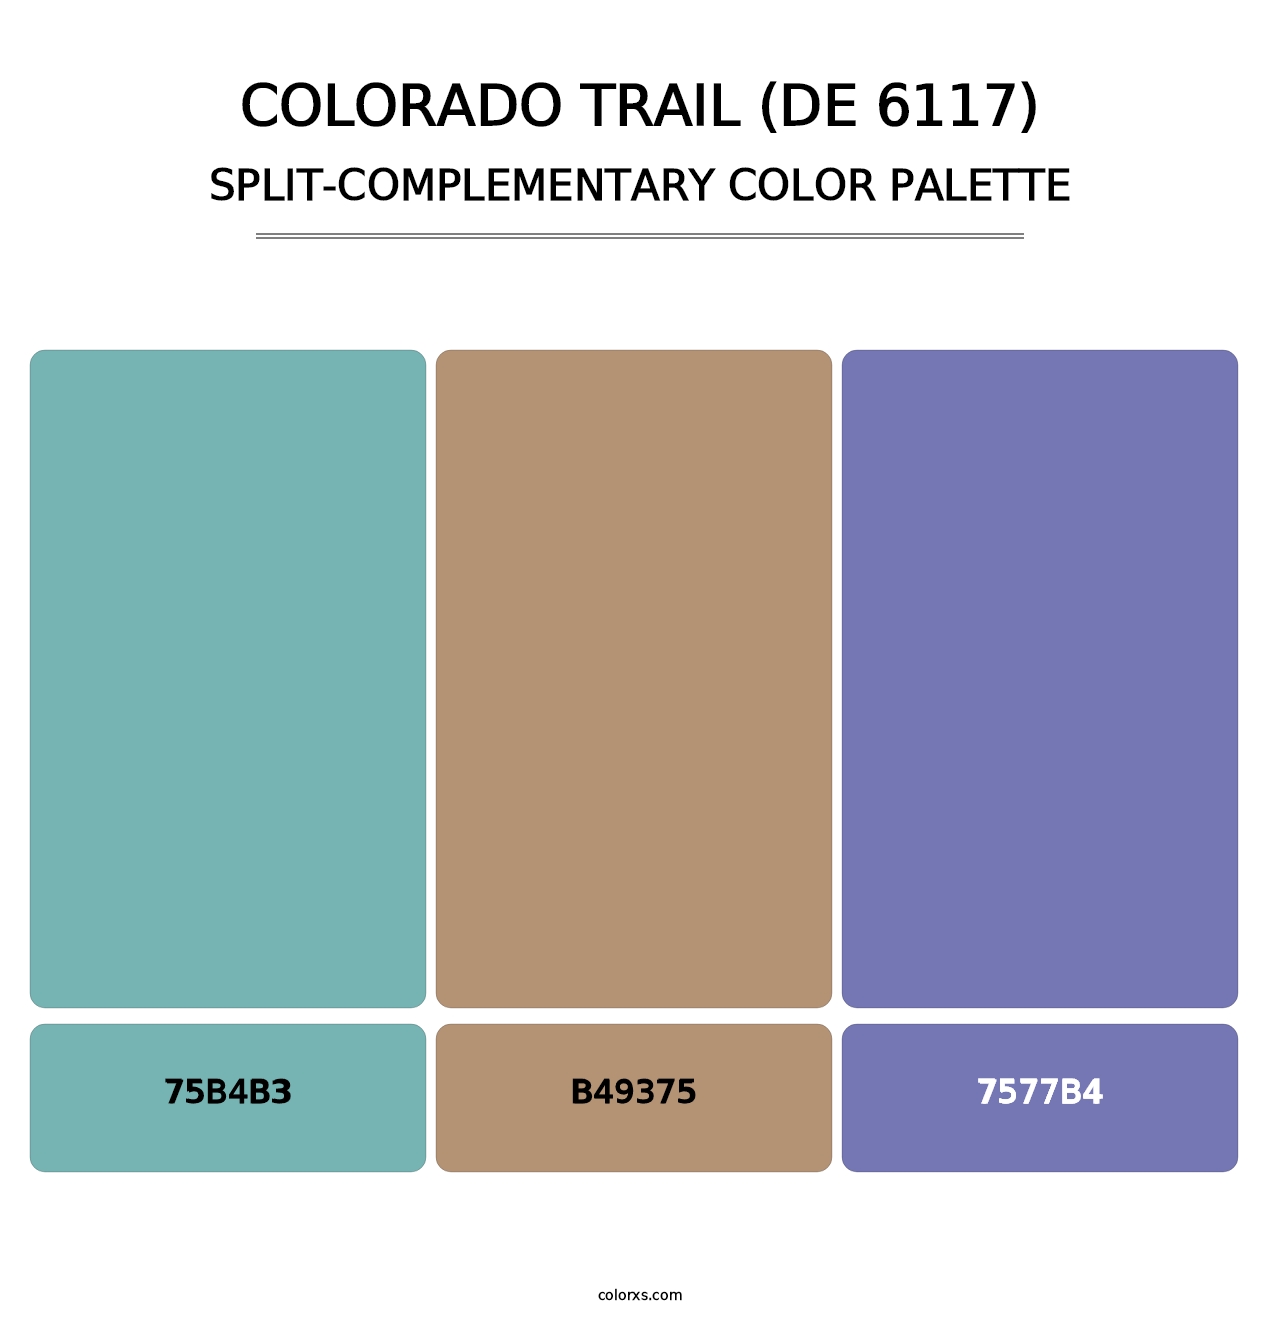 Colorado Trail (DE 6117) - Split-Complementary Color Palette